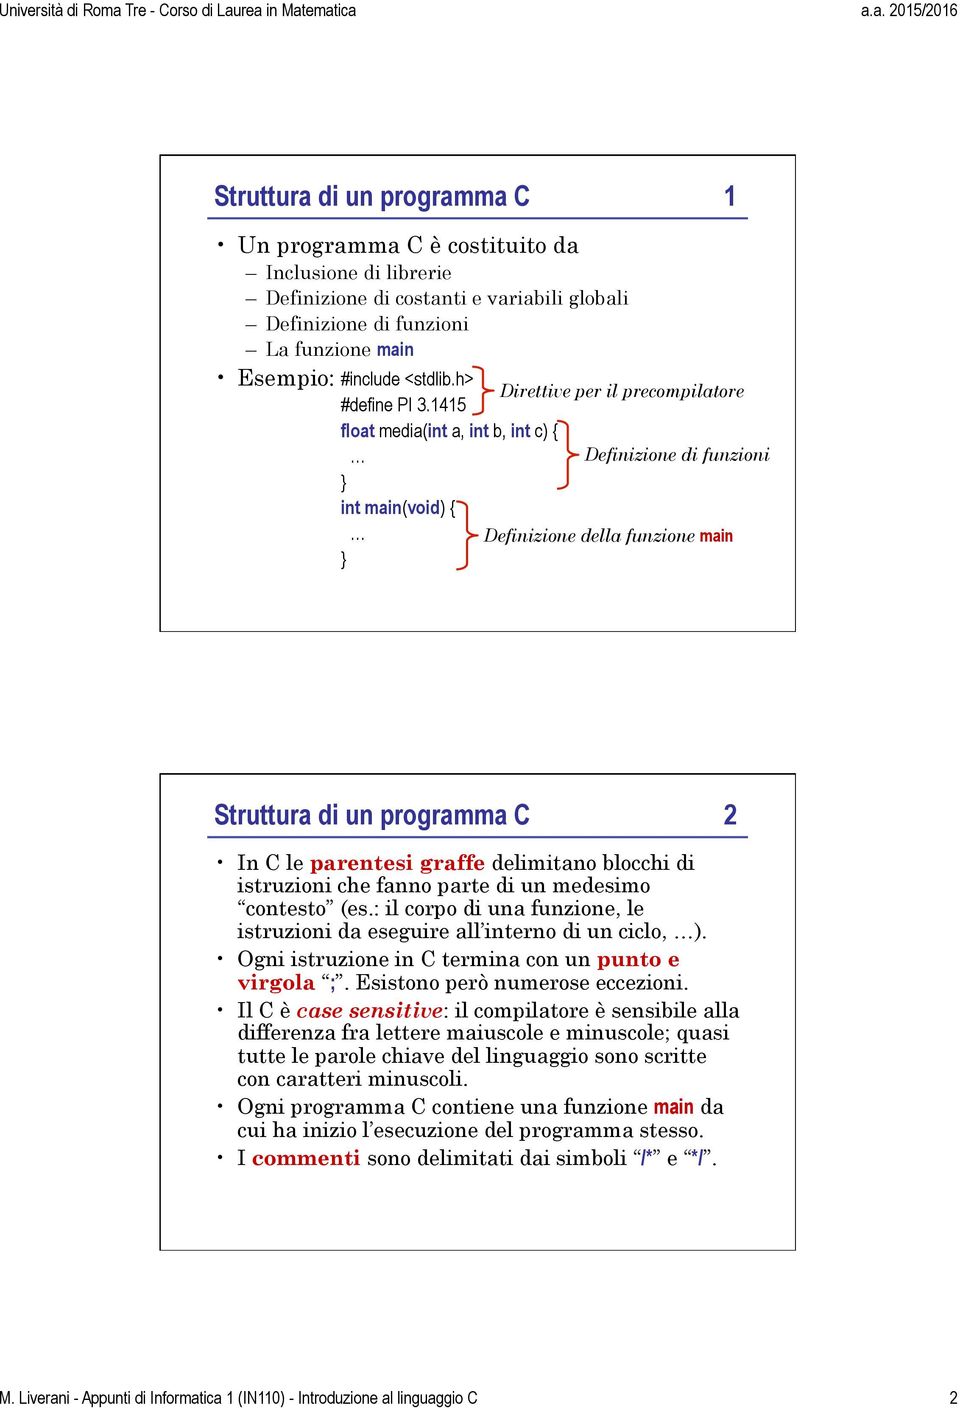 1415 float media(int a, int b, int c) { int main(void) { Direttive per il precompilatore Definizione di funzioni Definizione della funzione main Struttura di un programma C 2 In C le parentesi graffe